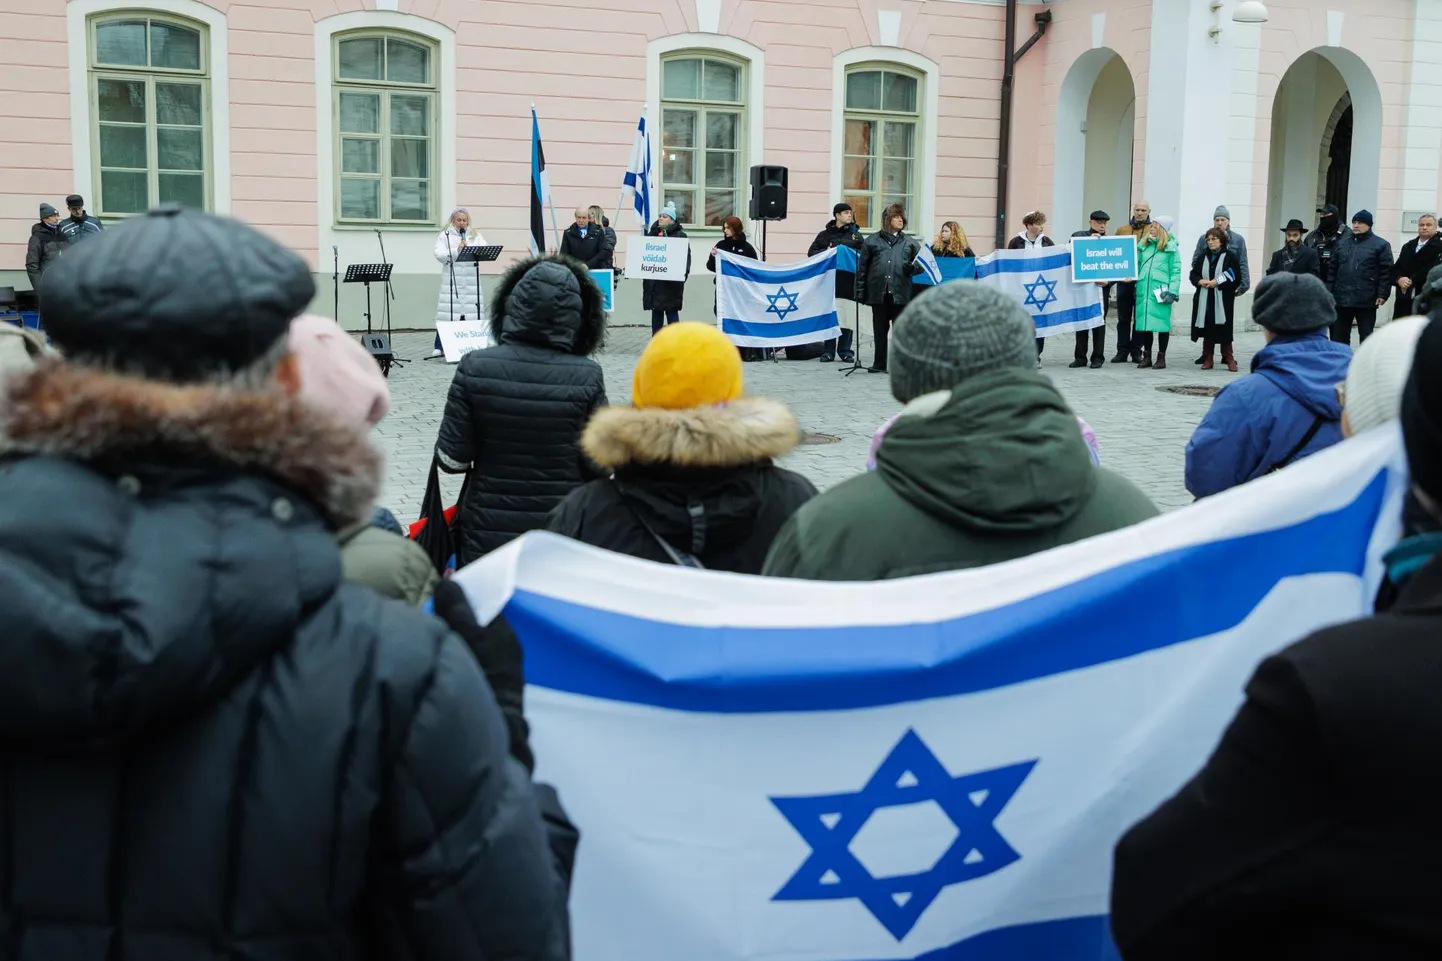 Эстонское отделение Международного христианского посольства в Иерусалиме, или Израильский центр, и несколько организаций провели в воскресенье на Тоомпеа демонстрацию в поддержку Израиля.